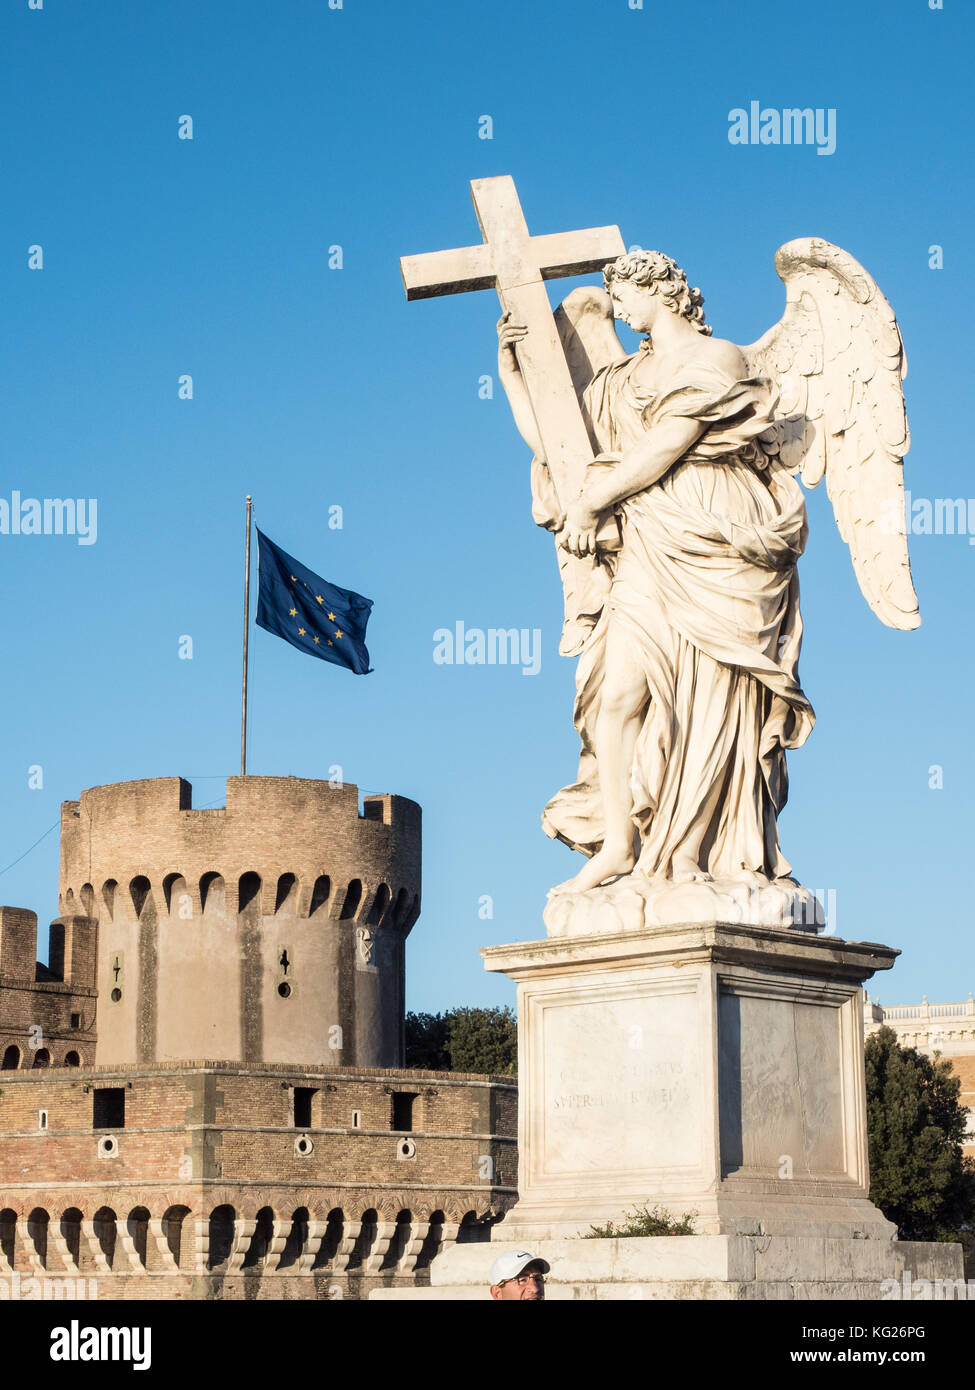 Statua all'esterno di Castel Sant'Angelo, sito patrimonio dell'umanità dell'UNESCO, Roma, Lazio, Italia, Europa Foto Stock